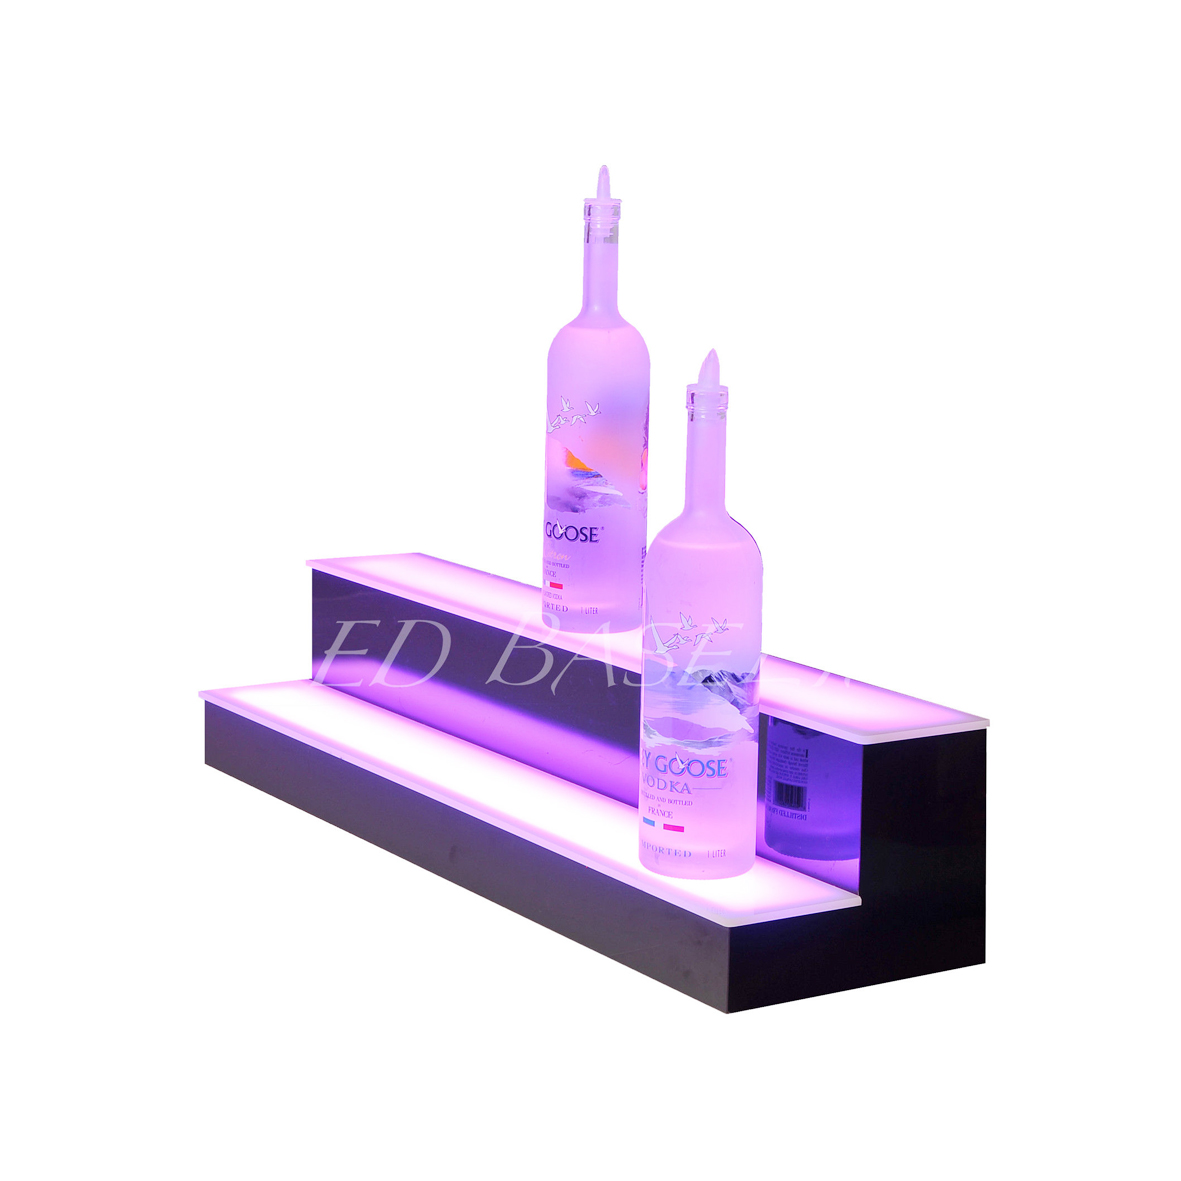 Acrylic RGB LED duha ka ligid nga Wine Display Rack